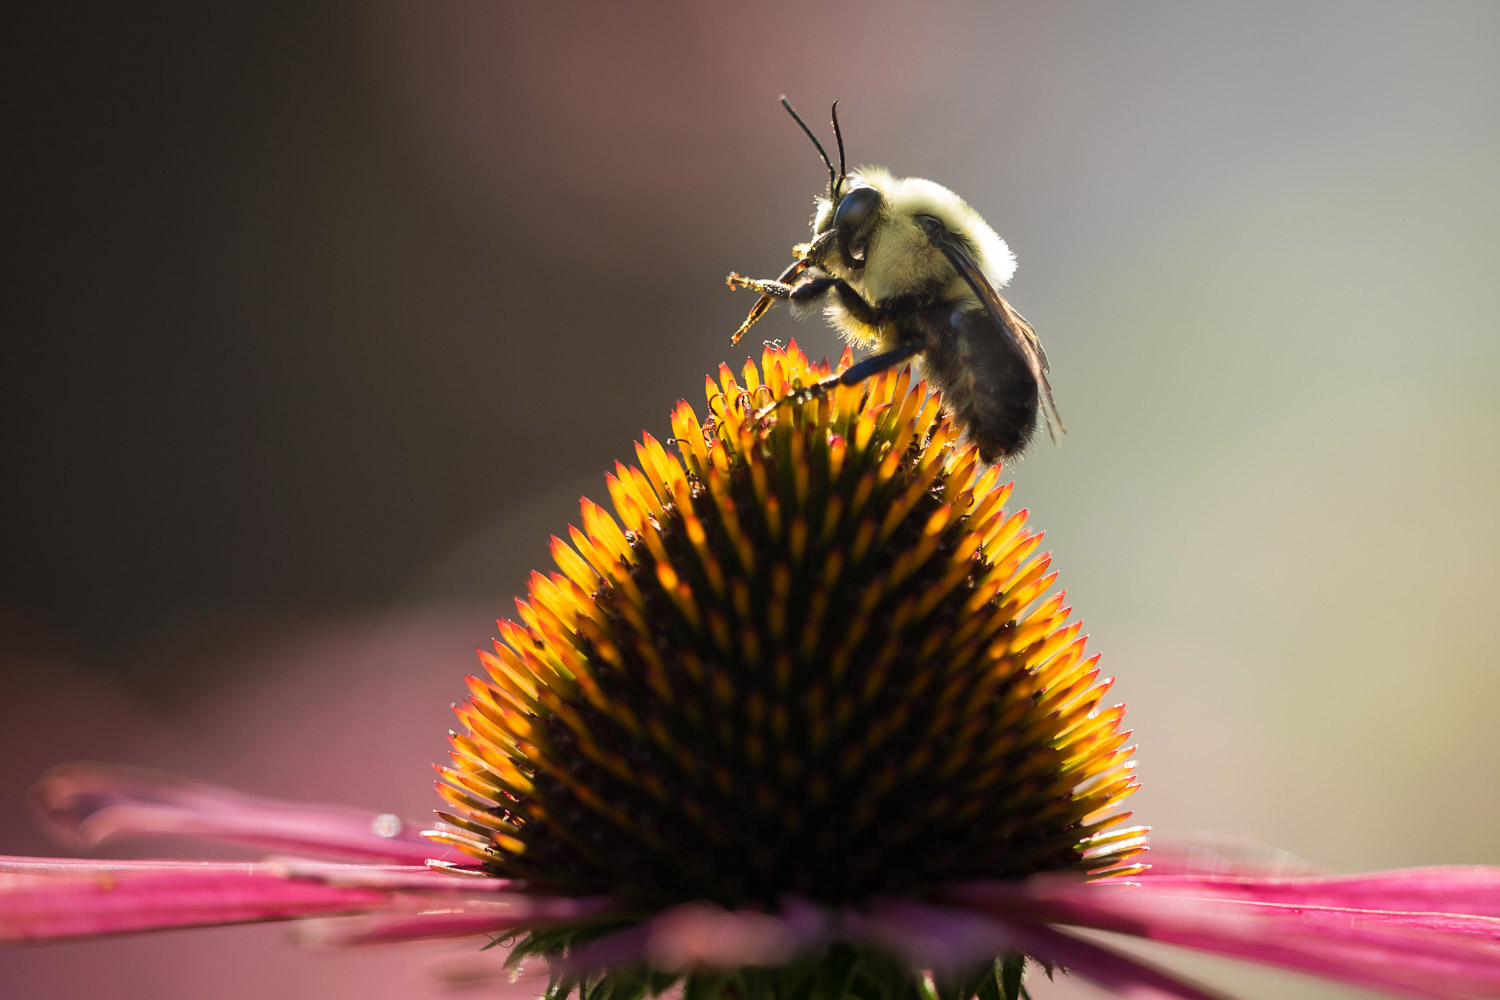 一只蜜蜂在粉红色花朵的柱头上